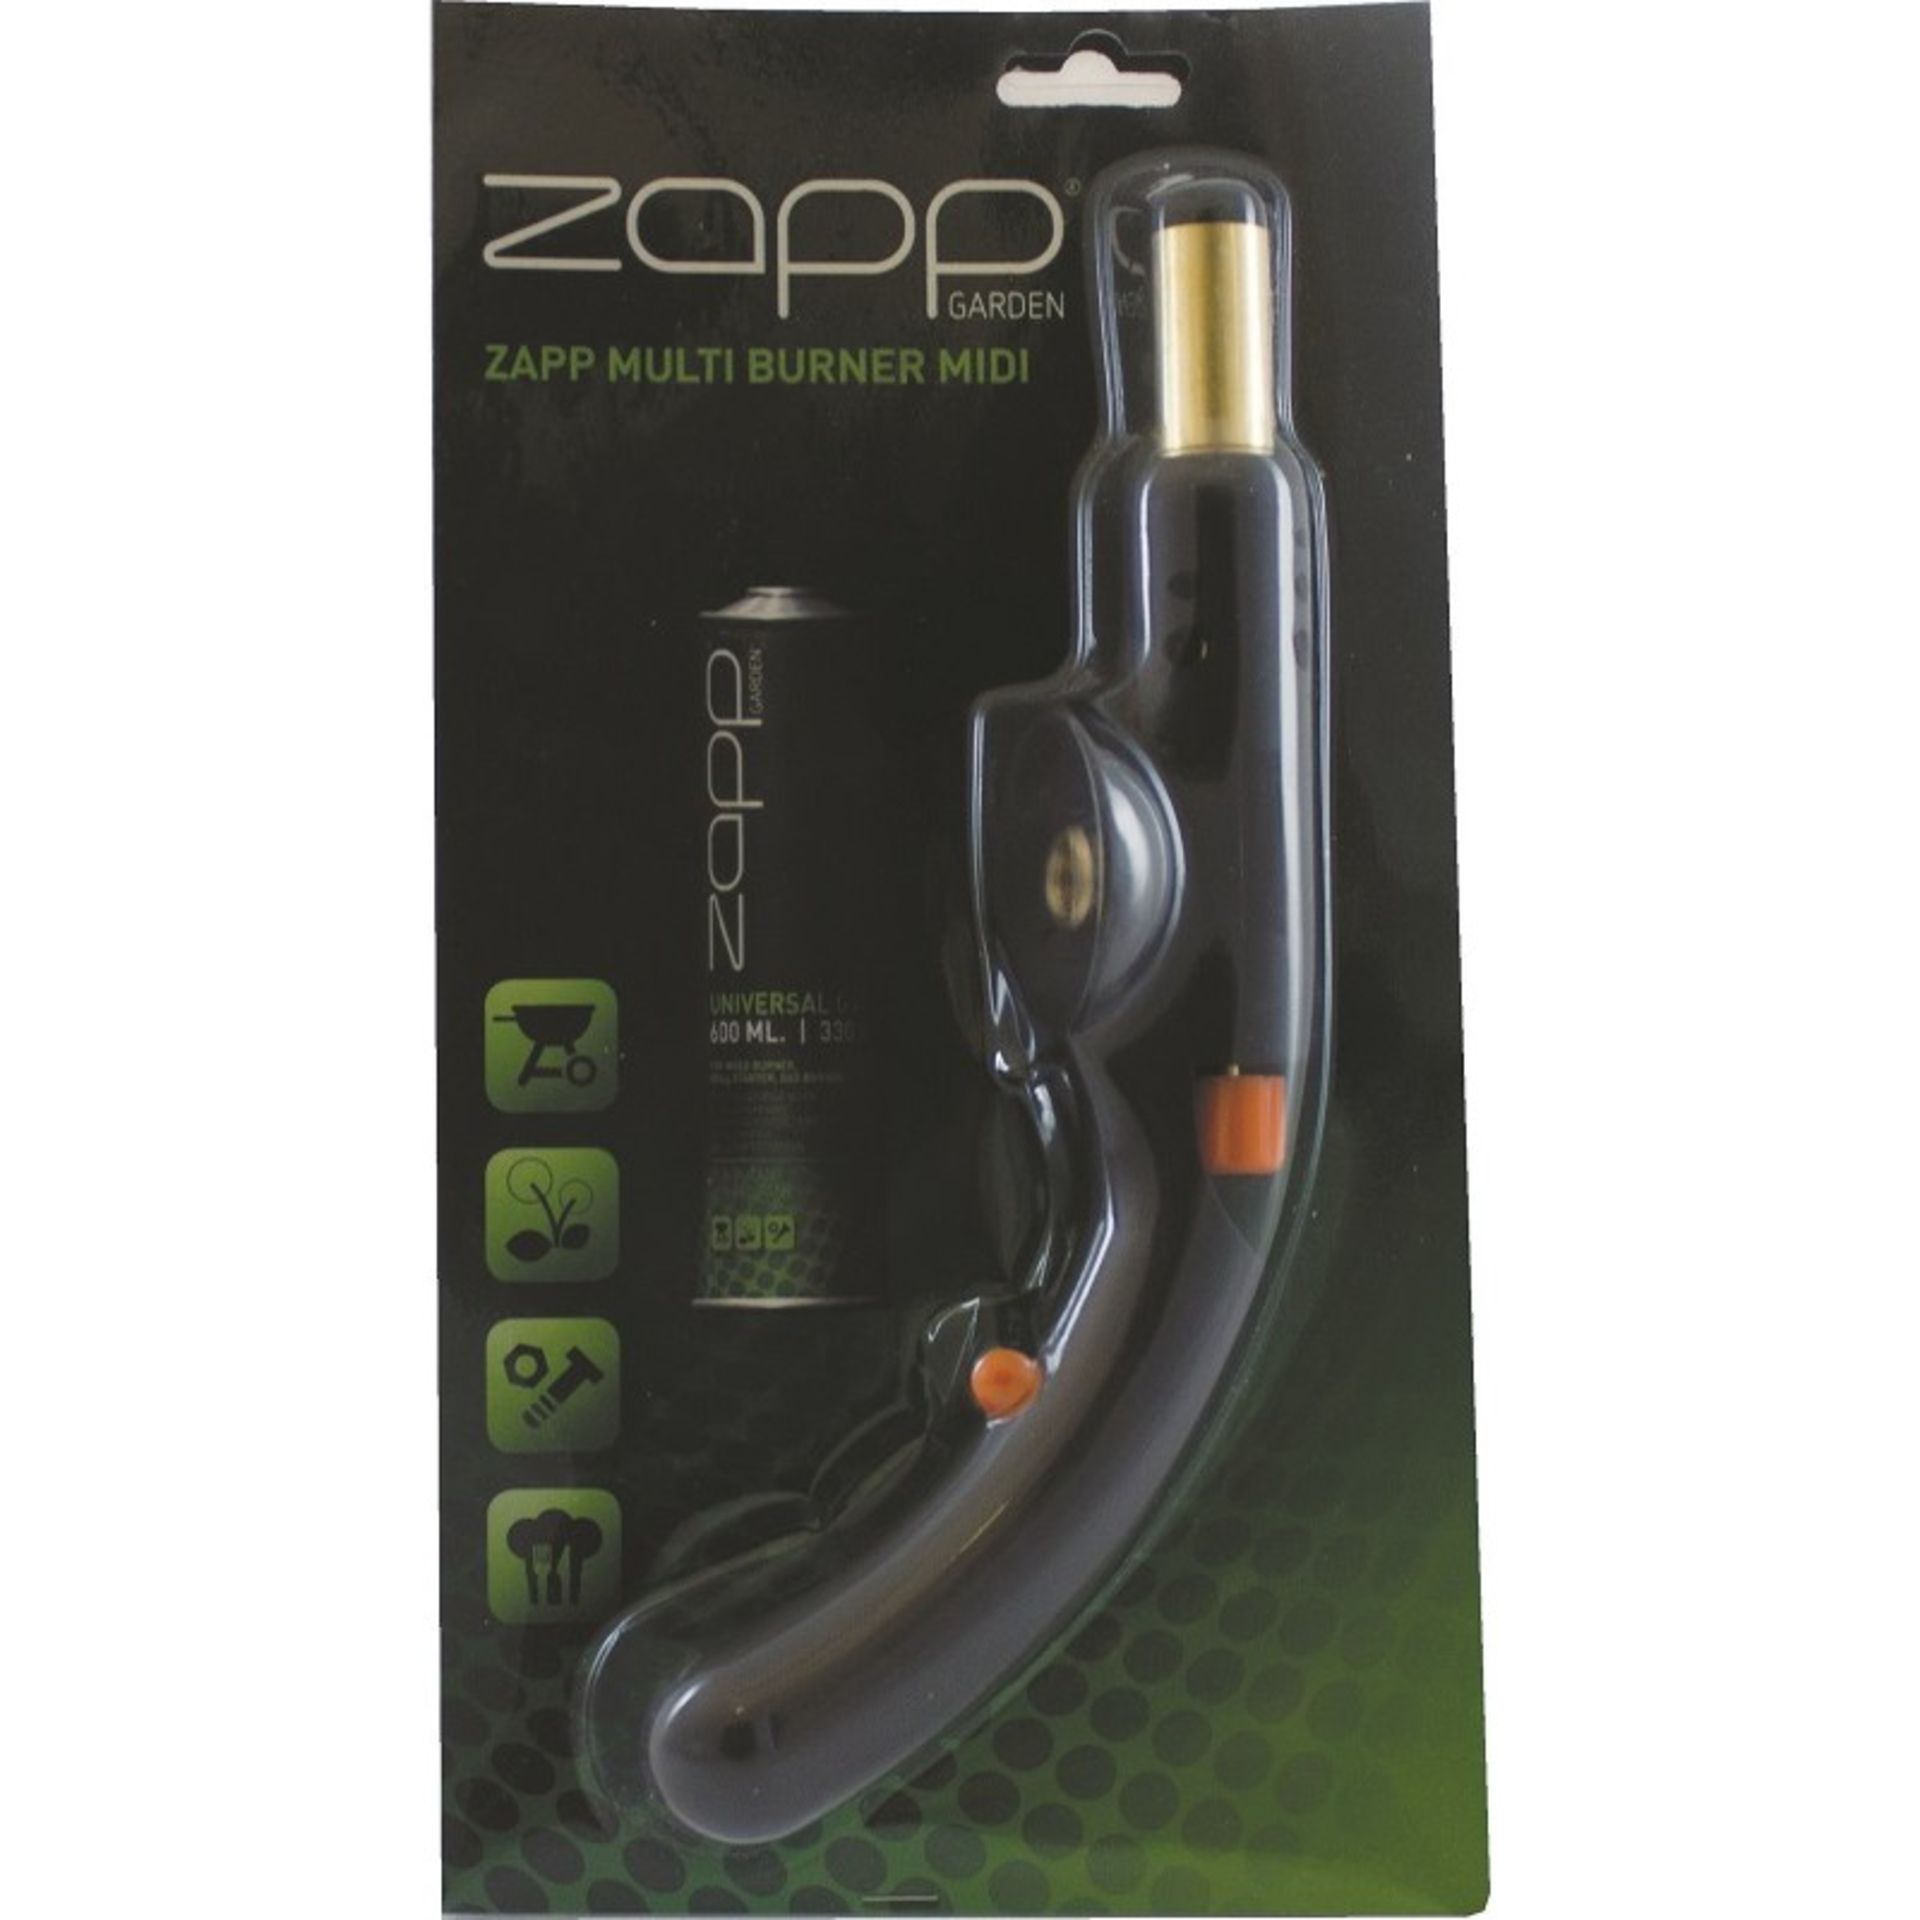 V Brand New Zapp Multi Burner Midi (Handheld) Blowlamp - For Propane/Butane